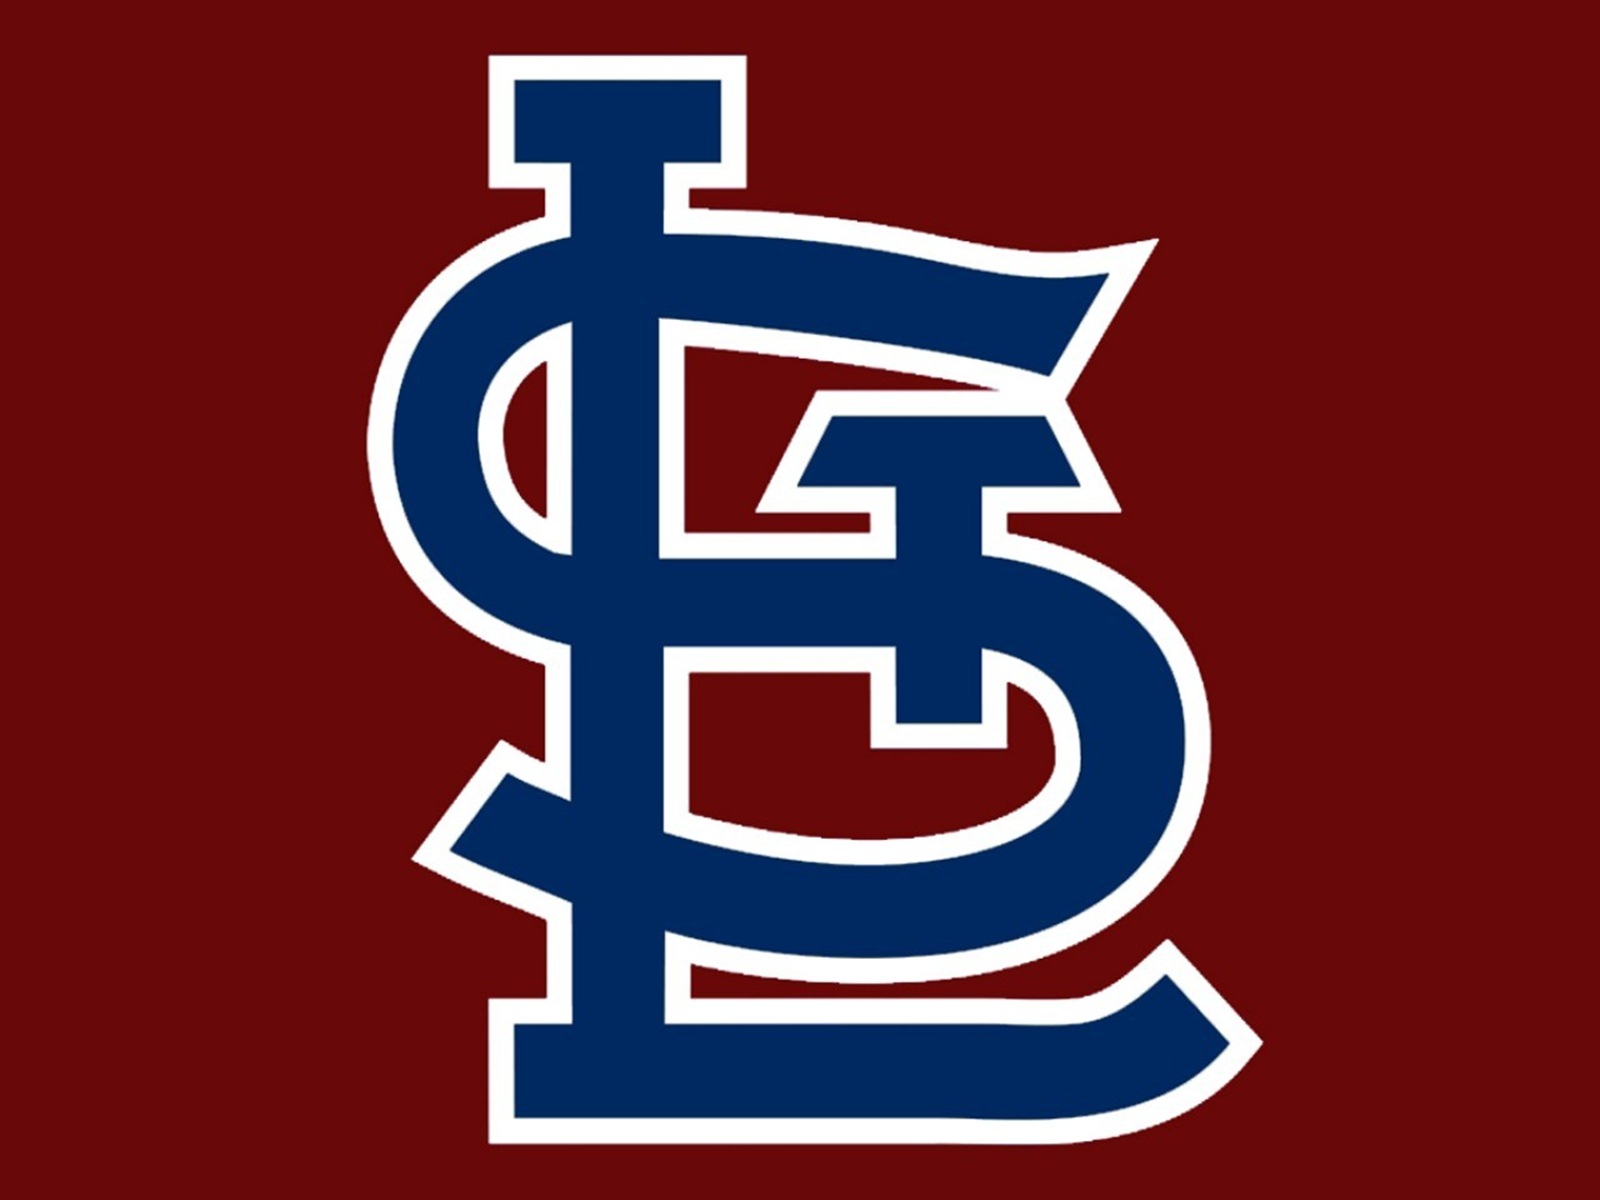 St. Louis Cardinals team